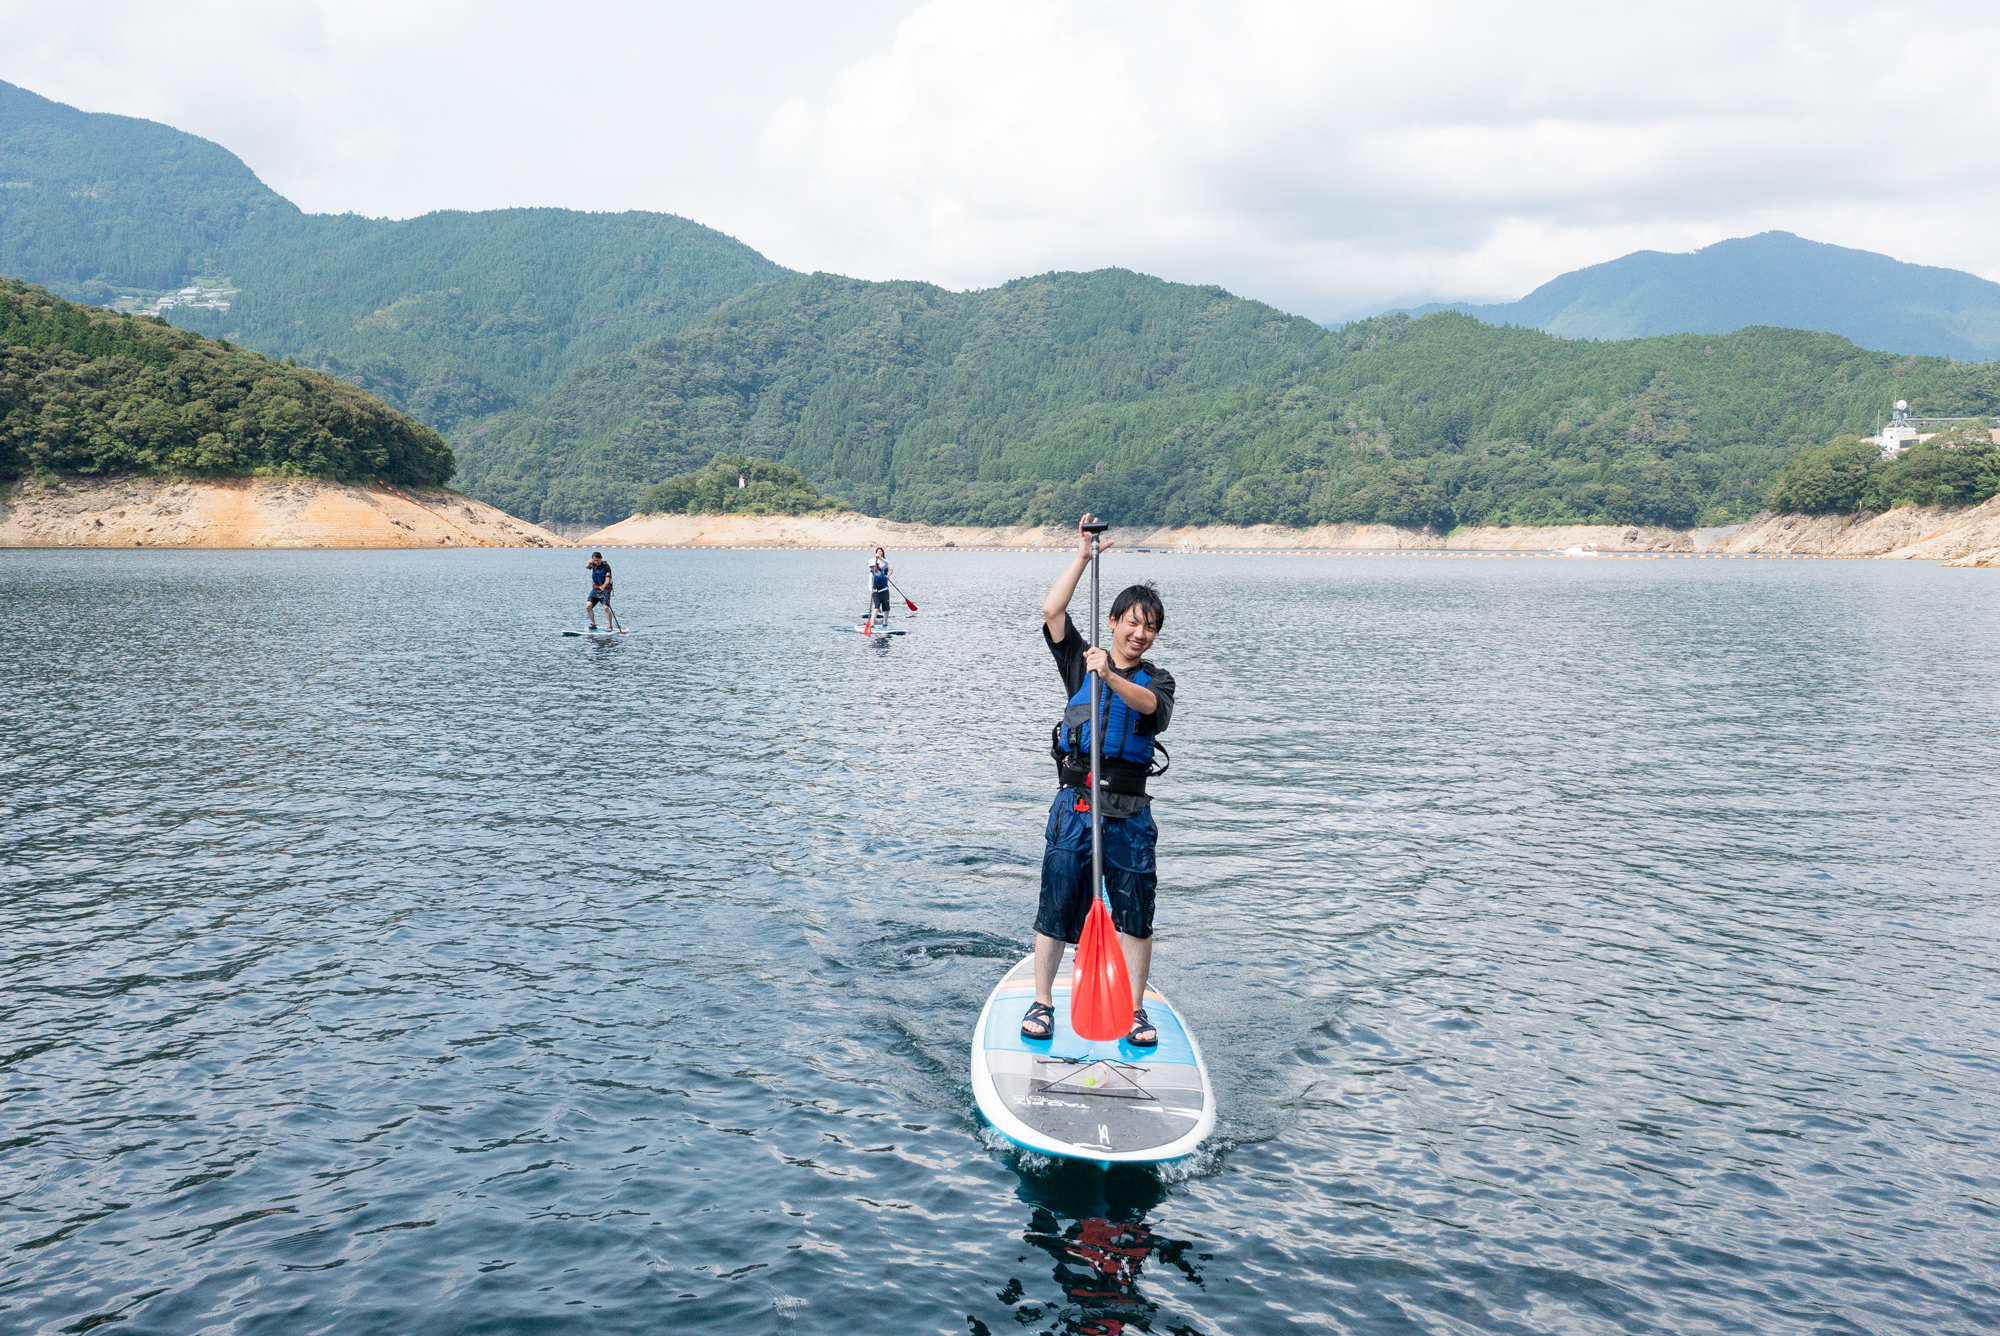 「スポる！やってみた。」 四国最大のダム湖でSUP体験